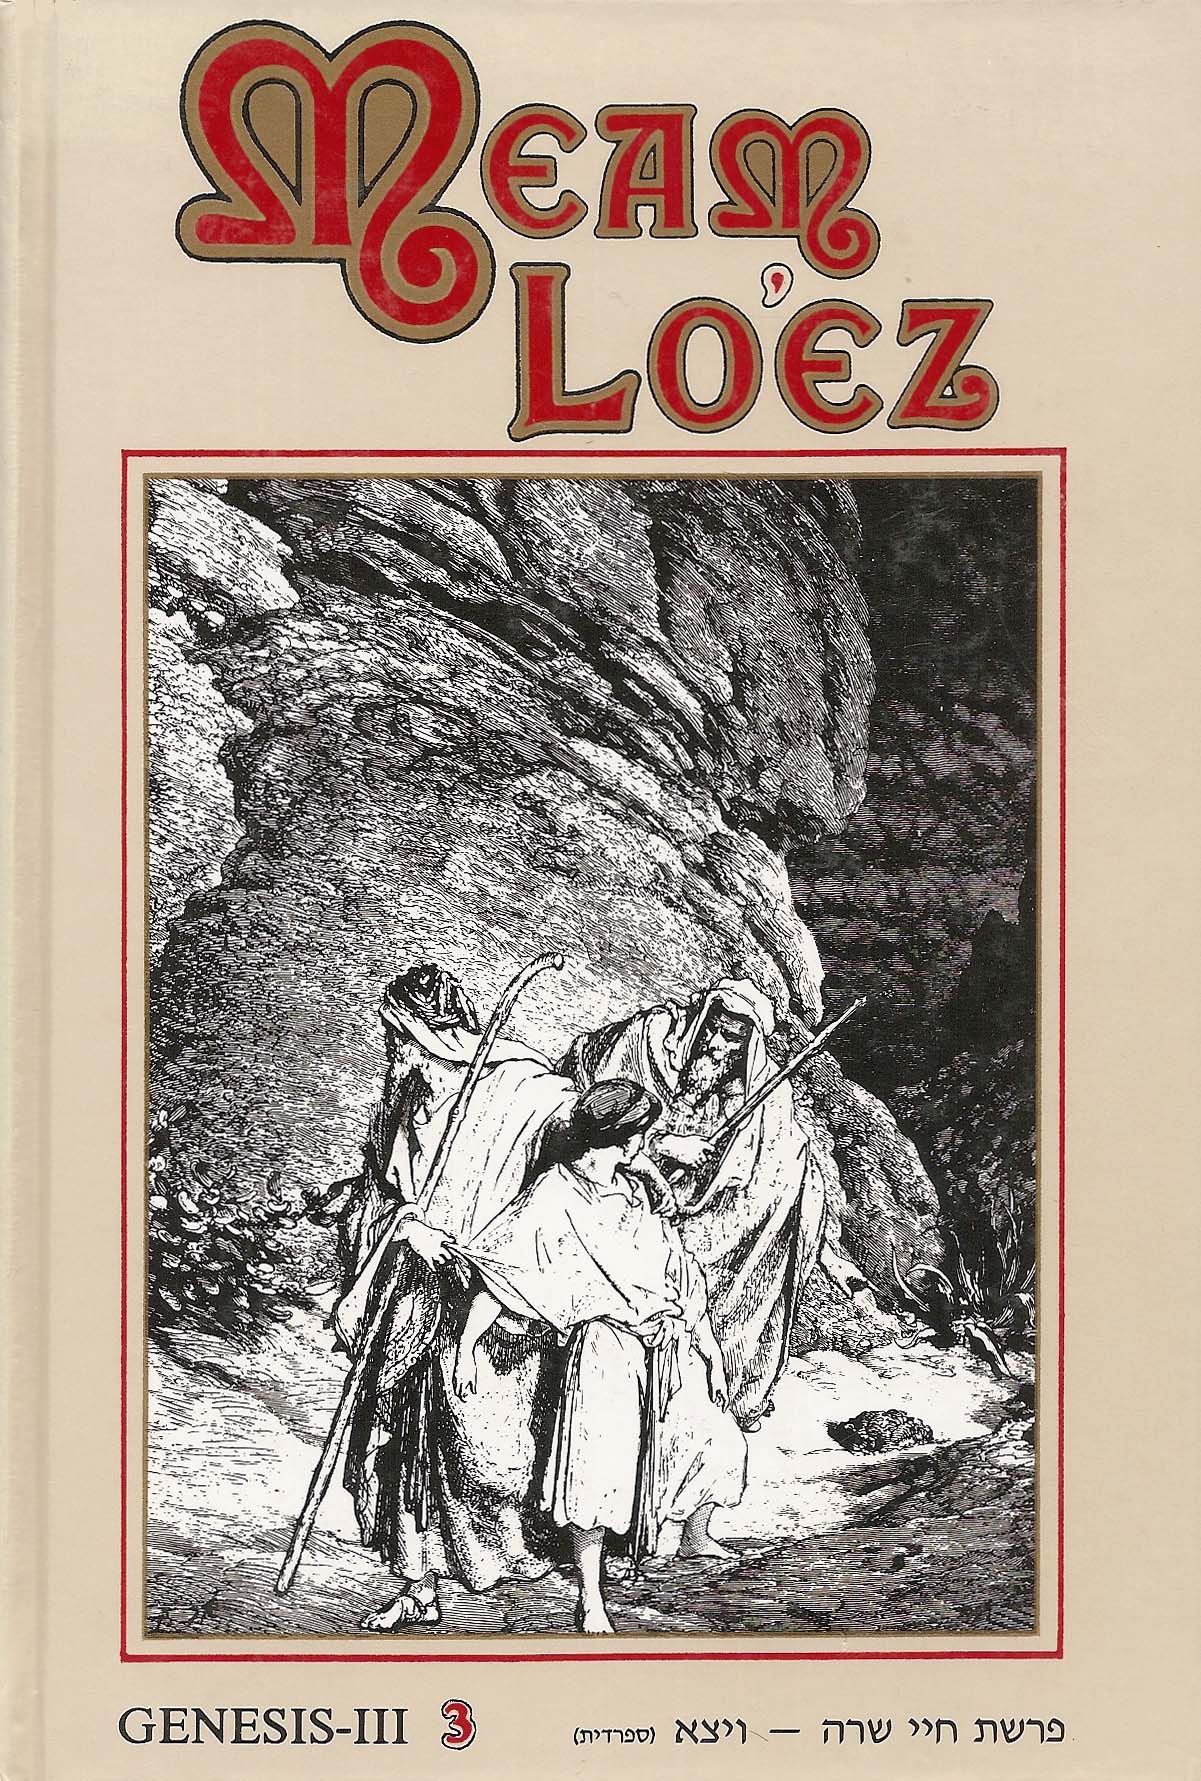 Meam Loéz Génesis vol.3 tomo 3 Jaiei Sara-Toldot, Vaietze-Va Ishlaj: antologías de comentarios, agadot y leyes sobre la torá, los profetas y los escritos